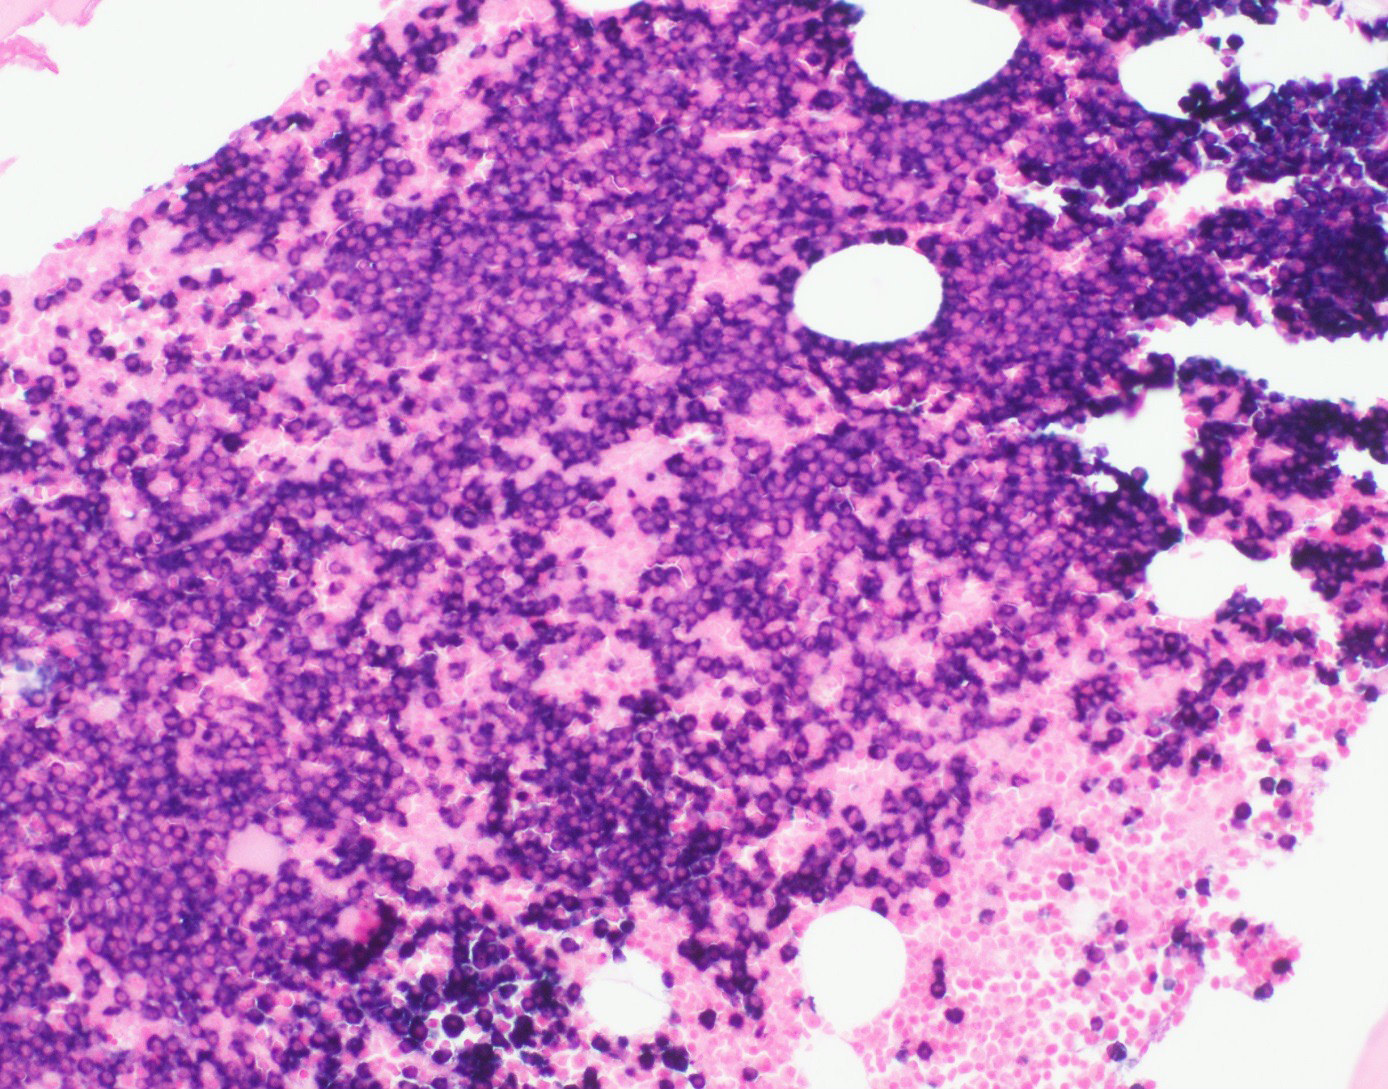 tetraëder Methode Chronisch Pathology Outlines - Plasma cell myeloma (multiple myeloma)